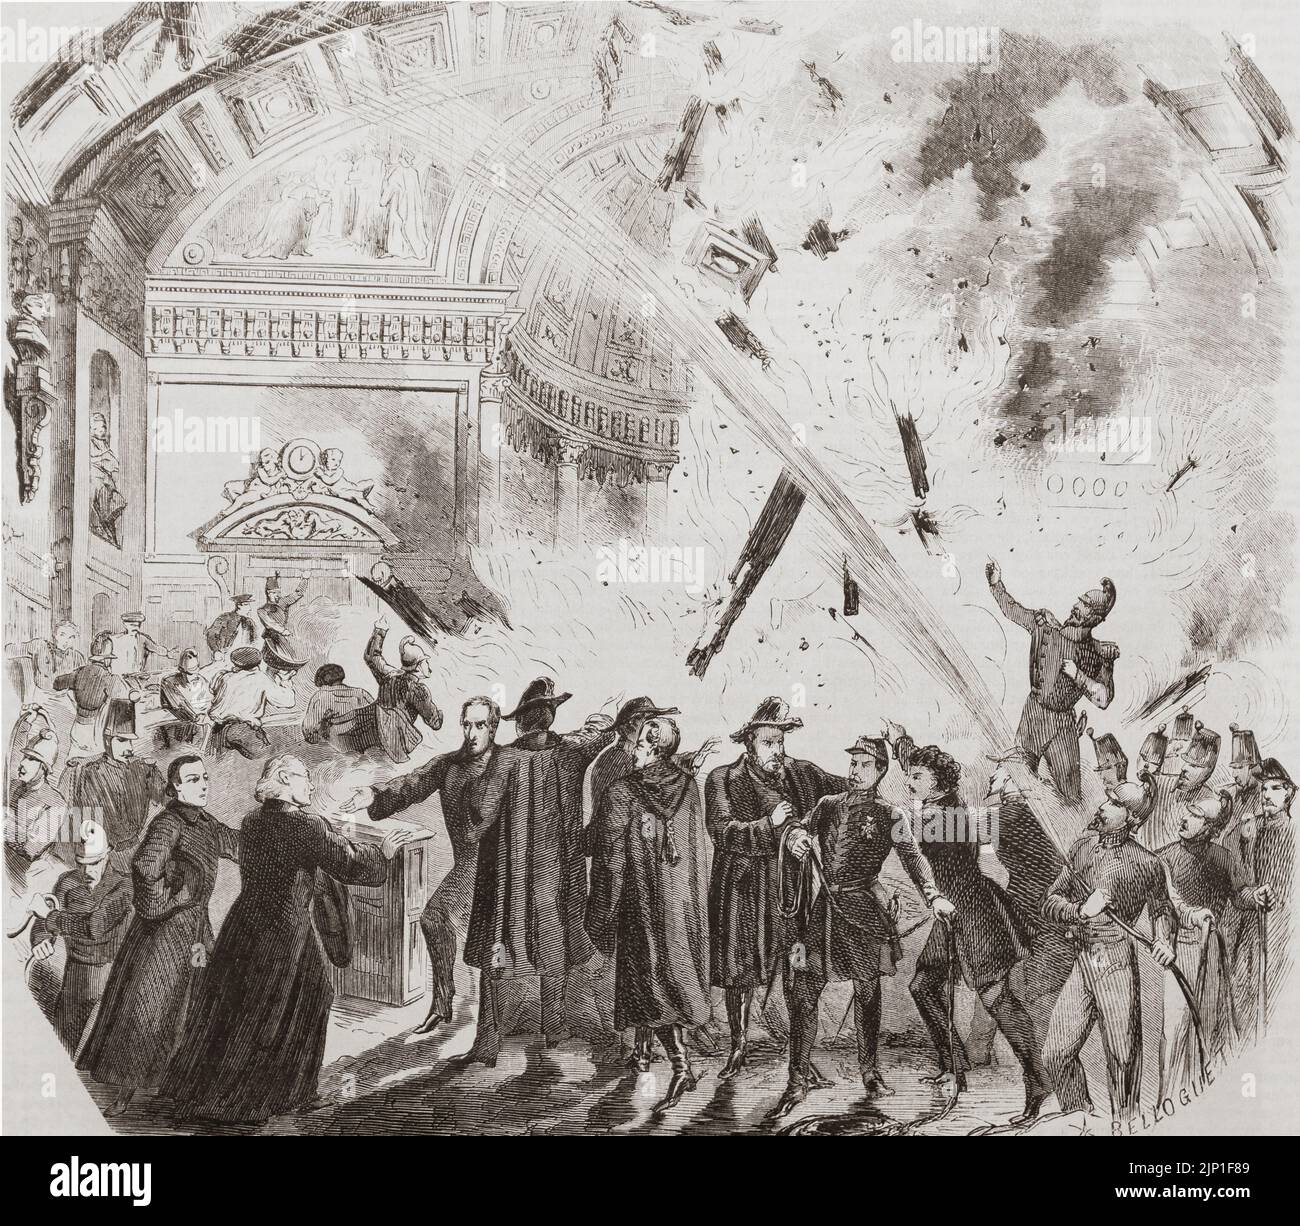 Fuego destruye la sala de sesiones en el Senado francés, Palacio de Luxemburgo, París, Francia, 27-28 de octubre, 1859. De L'Univers Illustre, publicado en París, 1859 Foto de stock